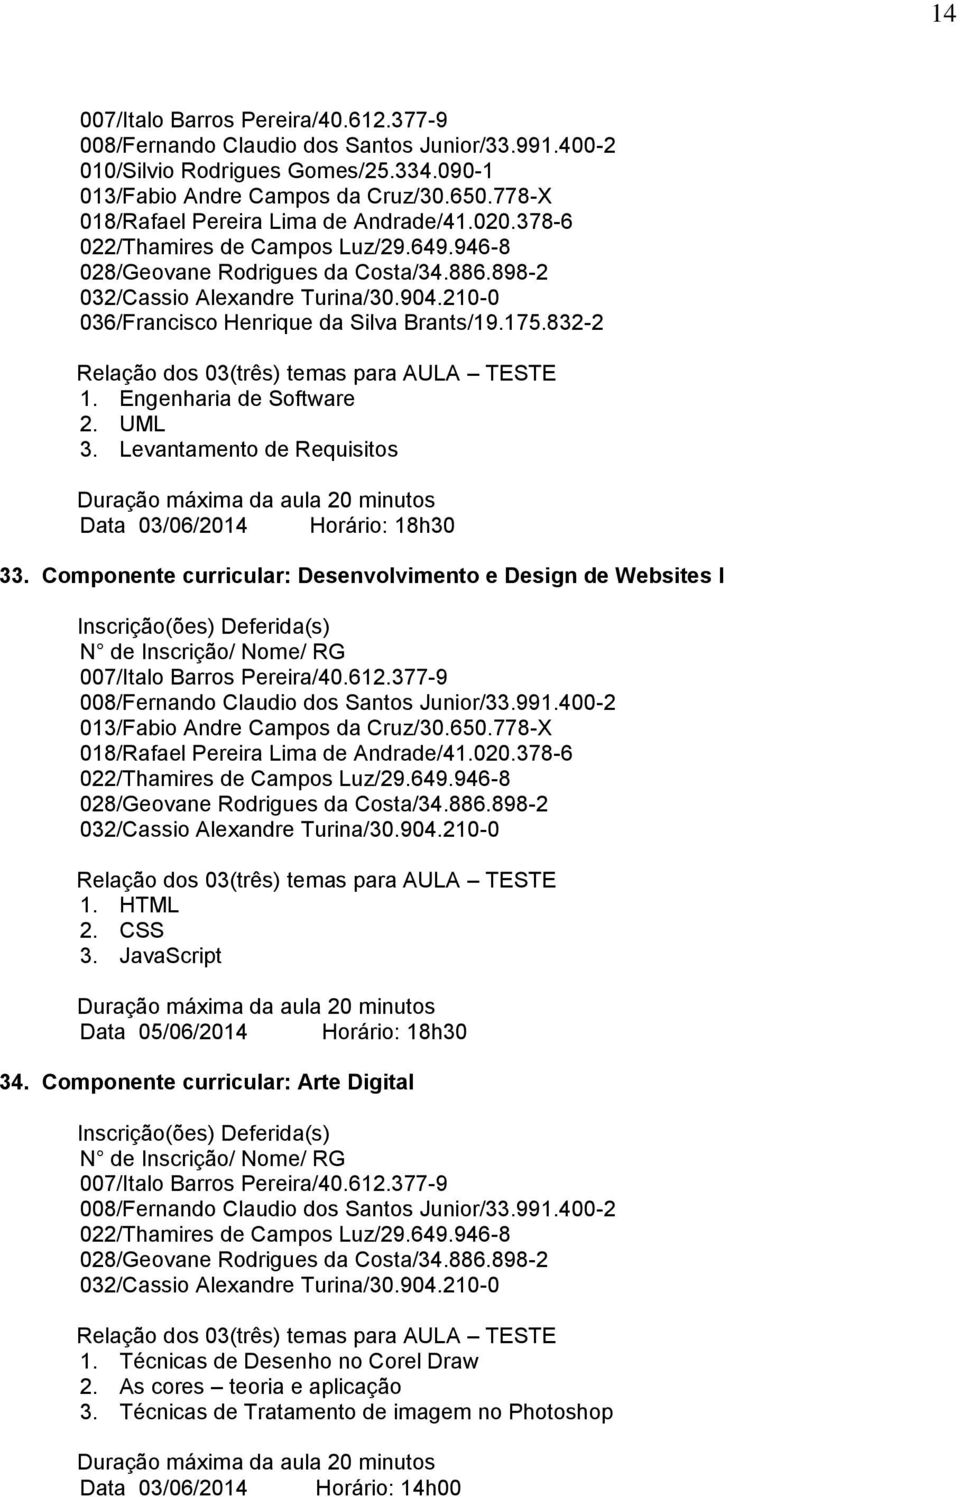 Componente curricular: Desenvolvimento e Design de Websites I 013/Fabio Andre Campos da Cruz/30.650.778-X 018/Rafael Pereira Lima de Andrade/41.020.378-6 1. HTML 2. CSS 3.